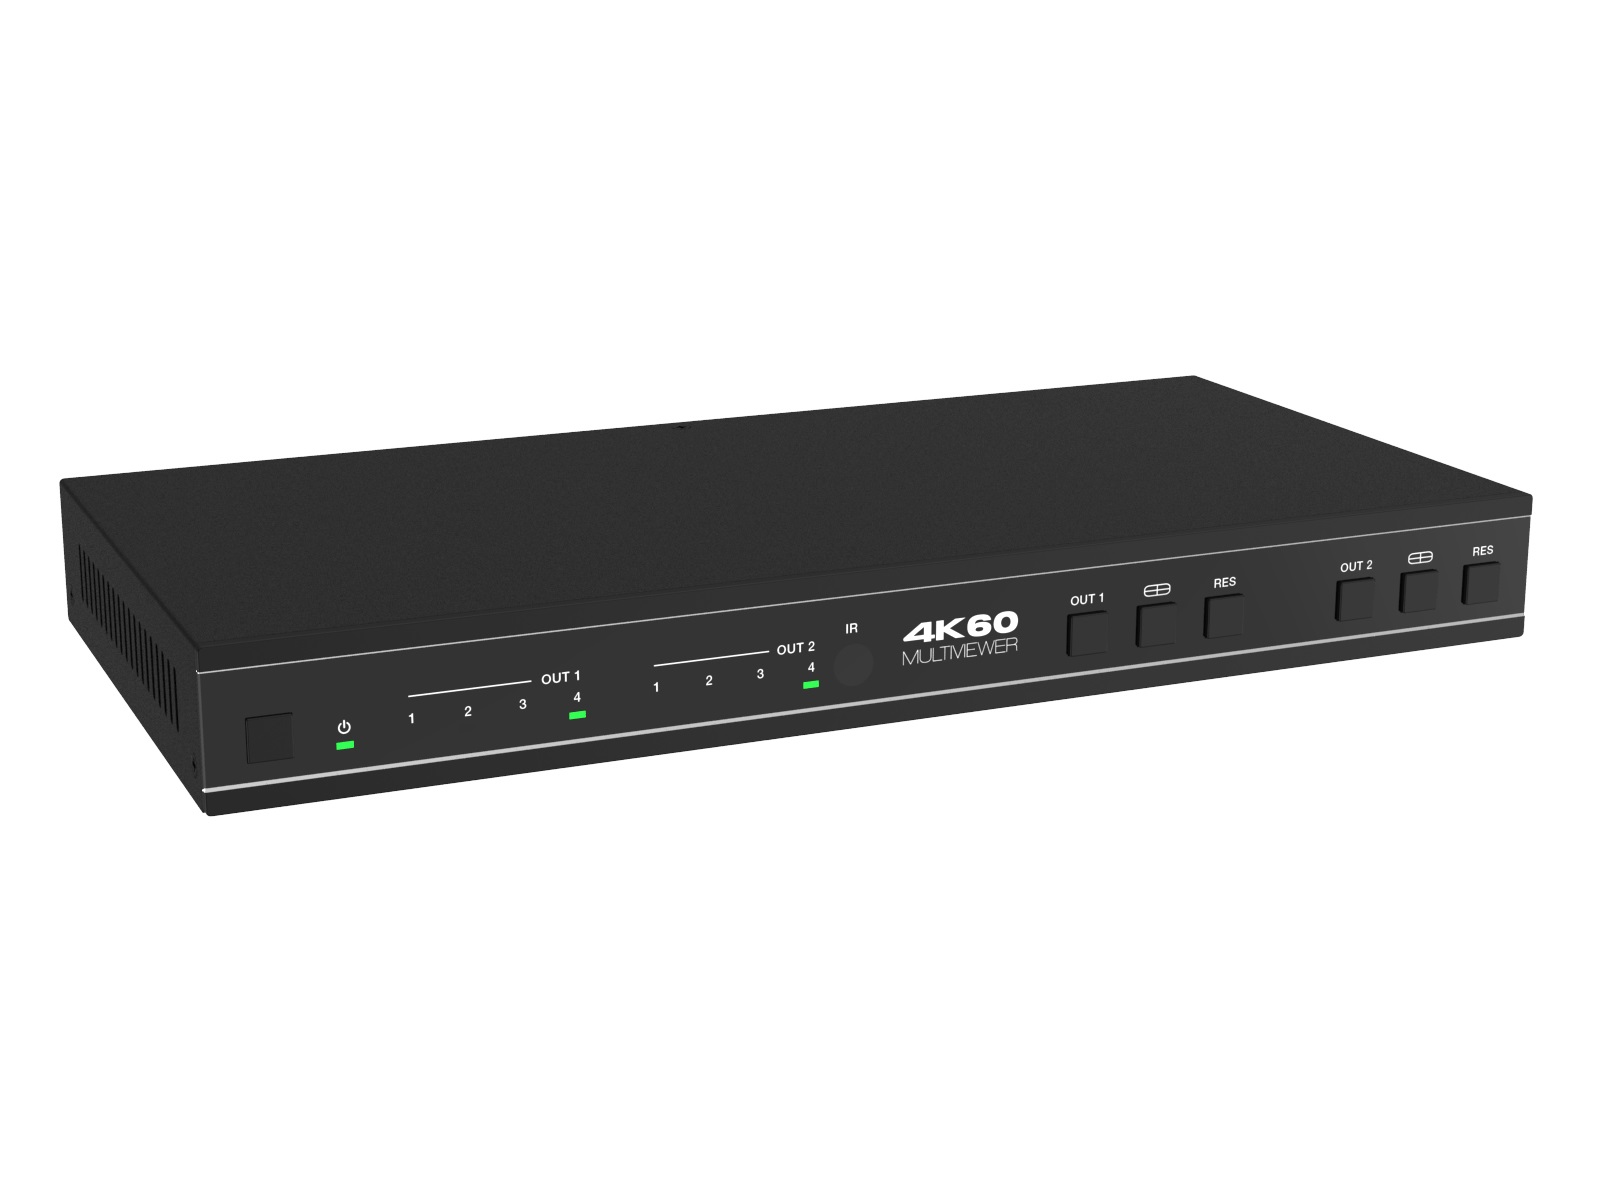 ANI-PIP-42UHD 4x2 4K60 UHD Multiviewer Seamless Video Matrix Switcher by A-NeuVideo